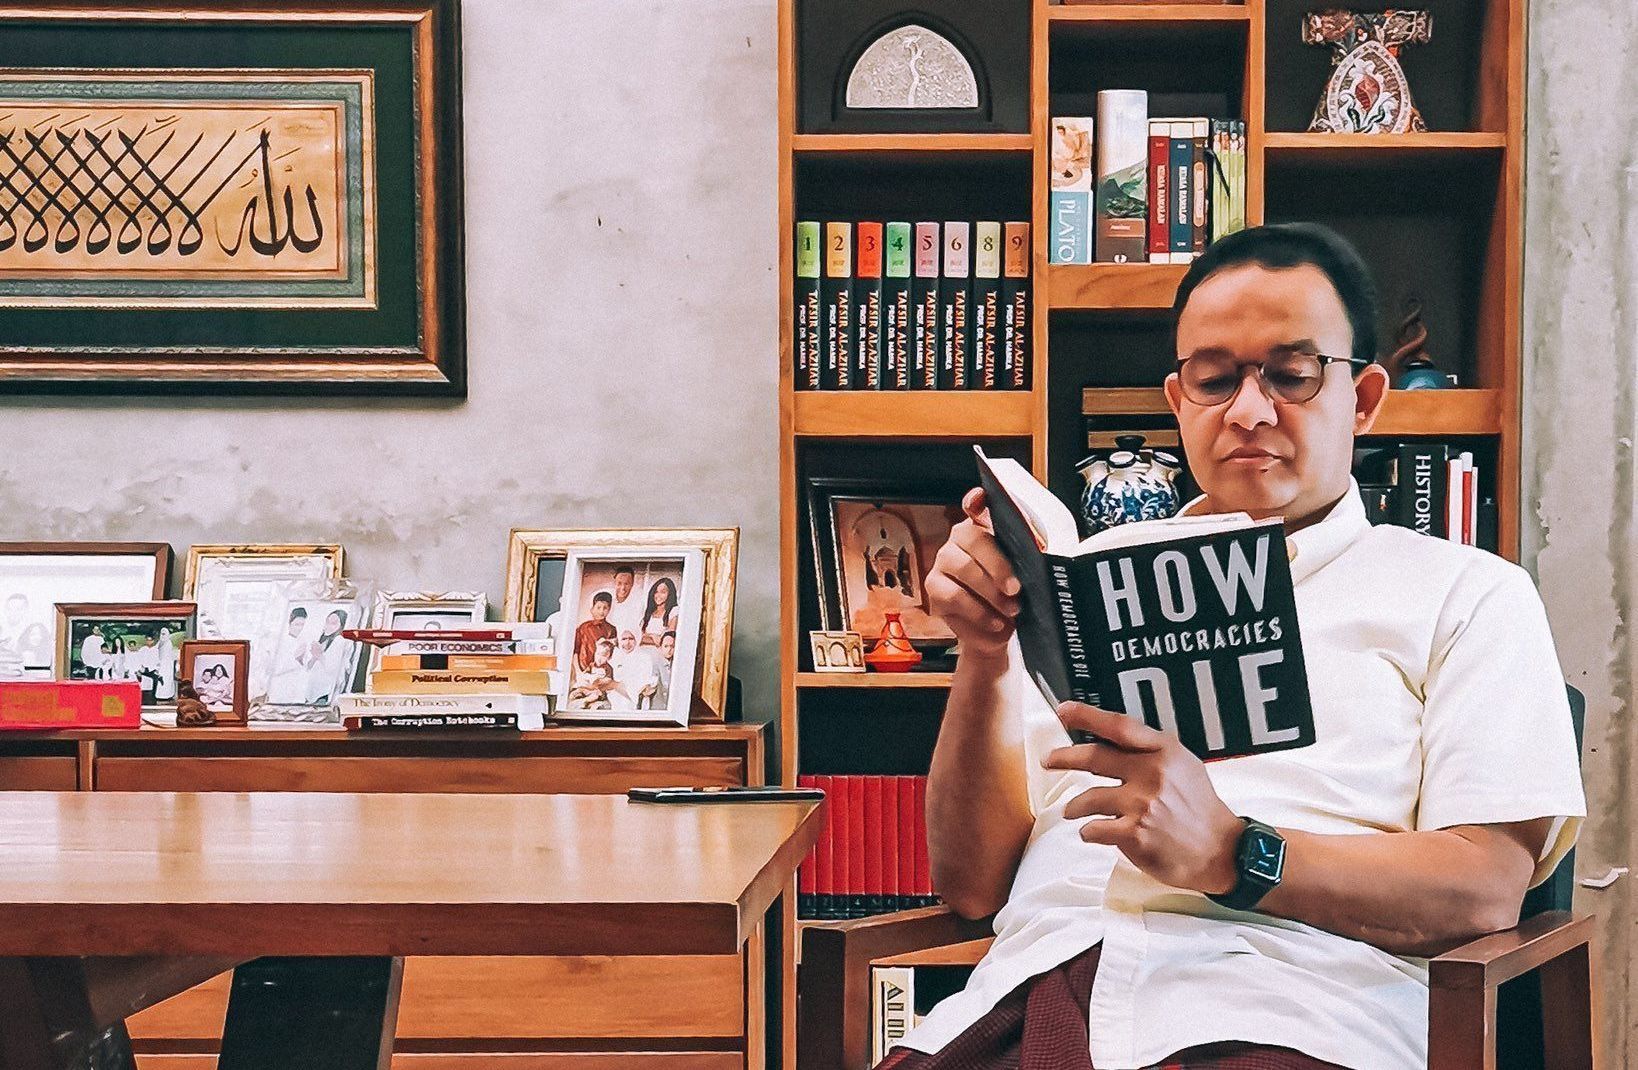 Buku How Die Democracies yang dibaca Gubernur DKI Jakarta Anies Baswedan menuai reaksi warganet di Twitter